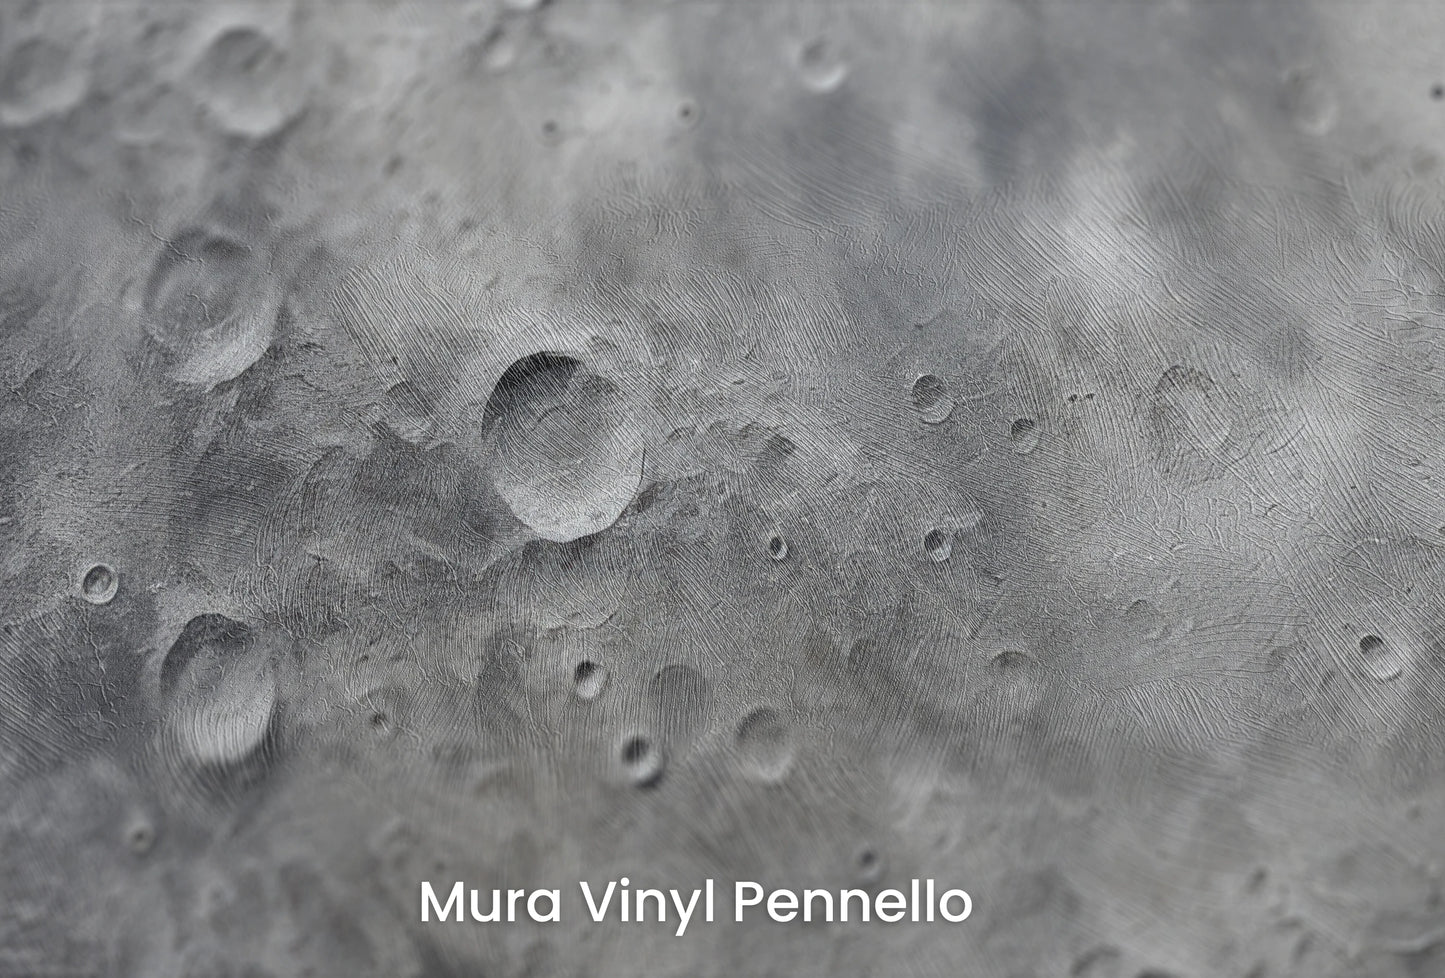 Zbliżenie na artystyczną fototapetę o nazwie Venusian Glow na podłożu Mura Vinyl Pennello - faktura pociągnięć pędzla malarskiego.